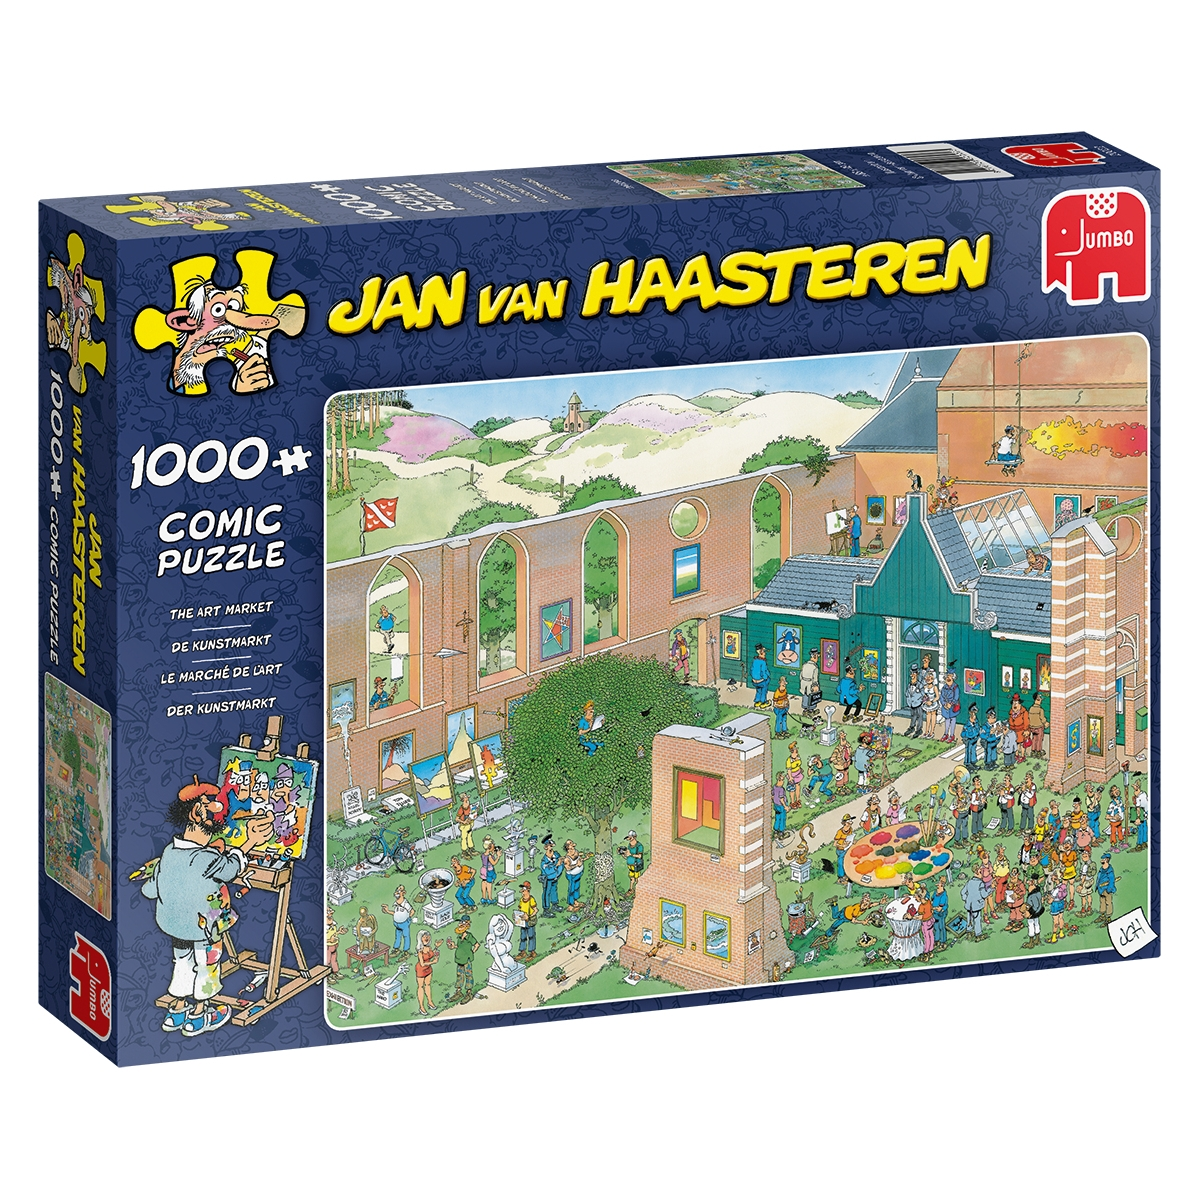 Van Teile 20022 Kunstmarkt-1000 Mehrfarben Jan Puzzle JUMBO Haasteren-Der Puzzlespiel,